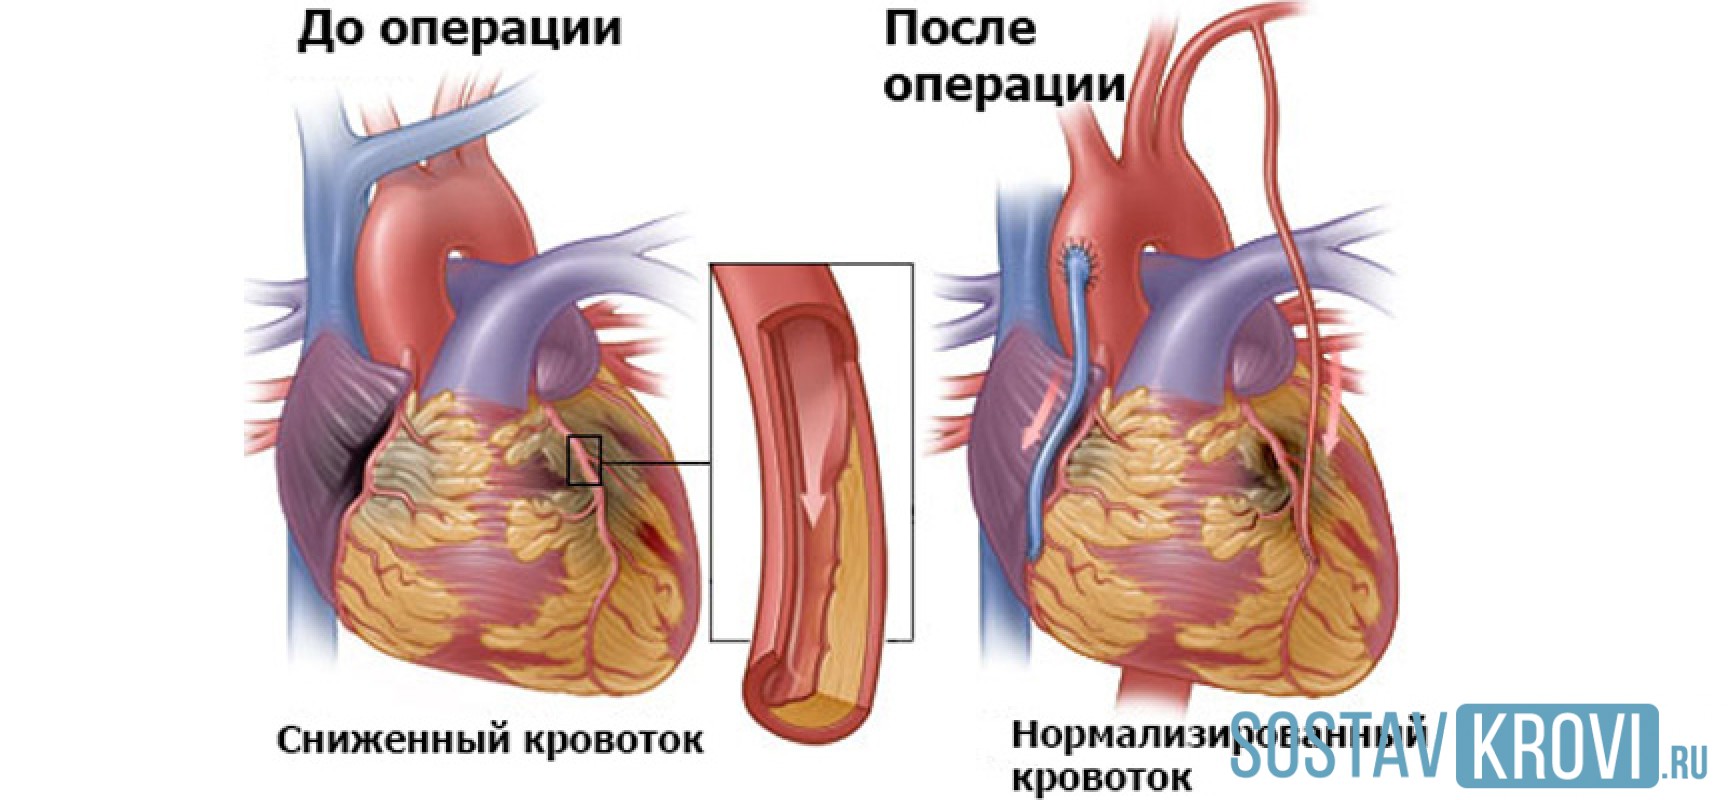 Шунт в медицине. Шунтирование коронарных артерий. Аортокоронарное шунтирование хирургия. Маммарно коронарное шунтирование. Коронарное шунтирование сосудов сердца.